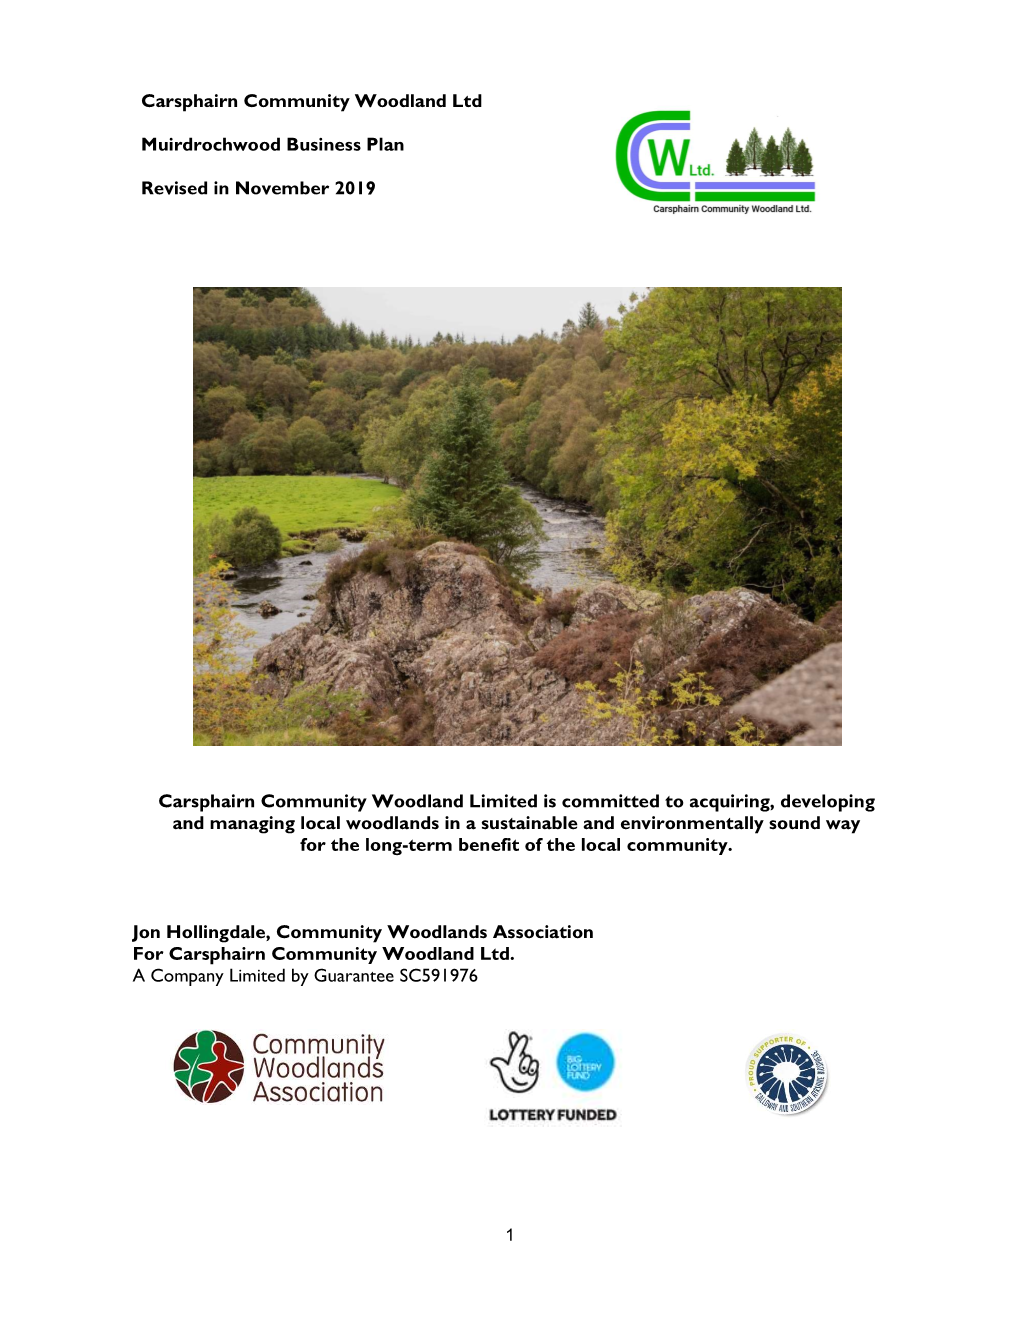 Carsphairn Community Woodland Ltd Muirdrochwood Business Plan